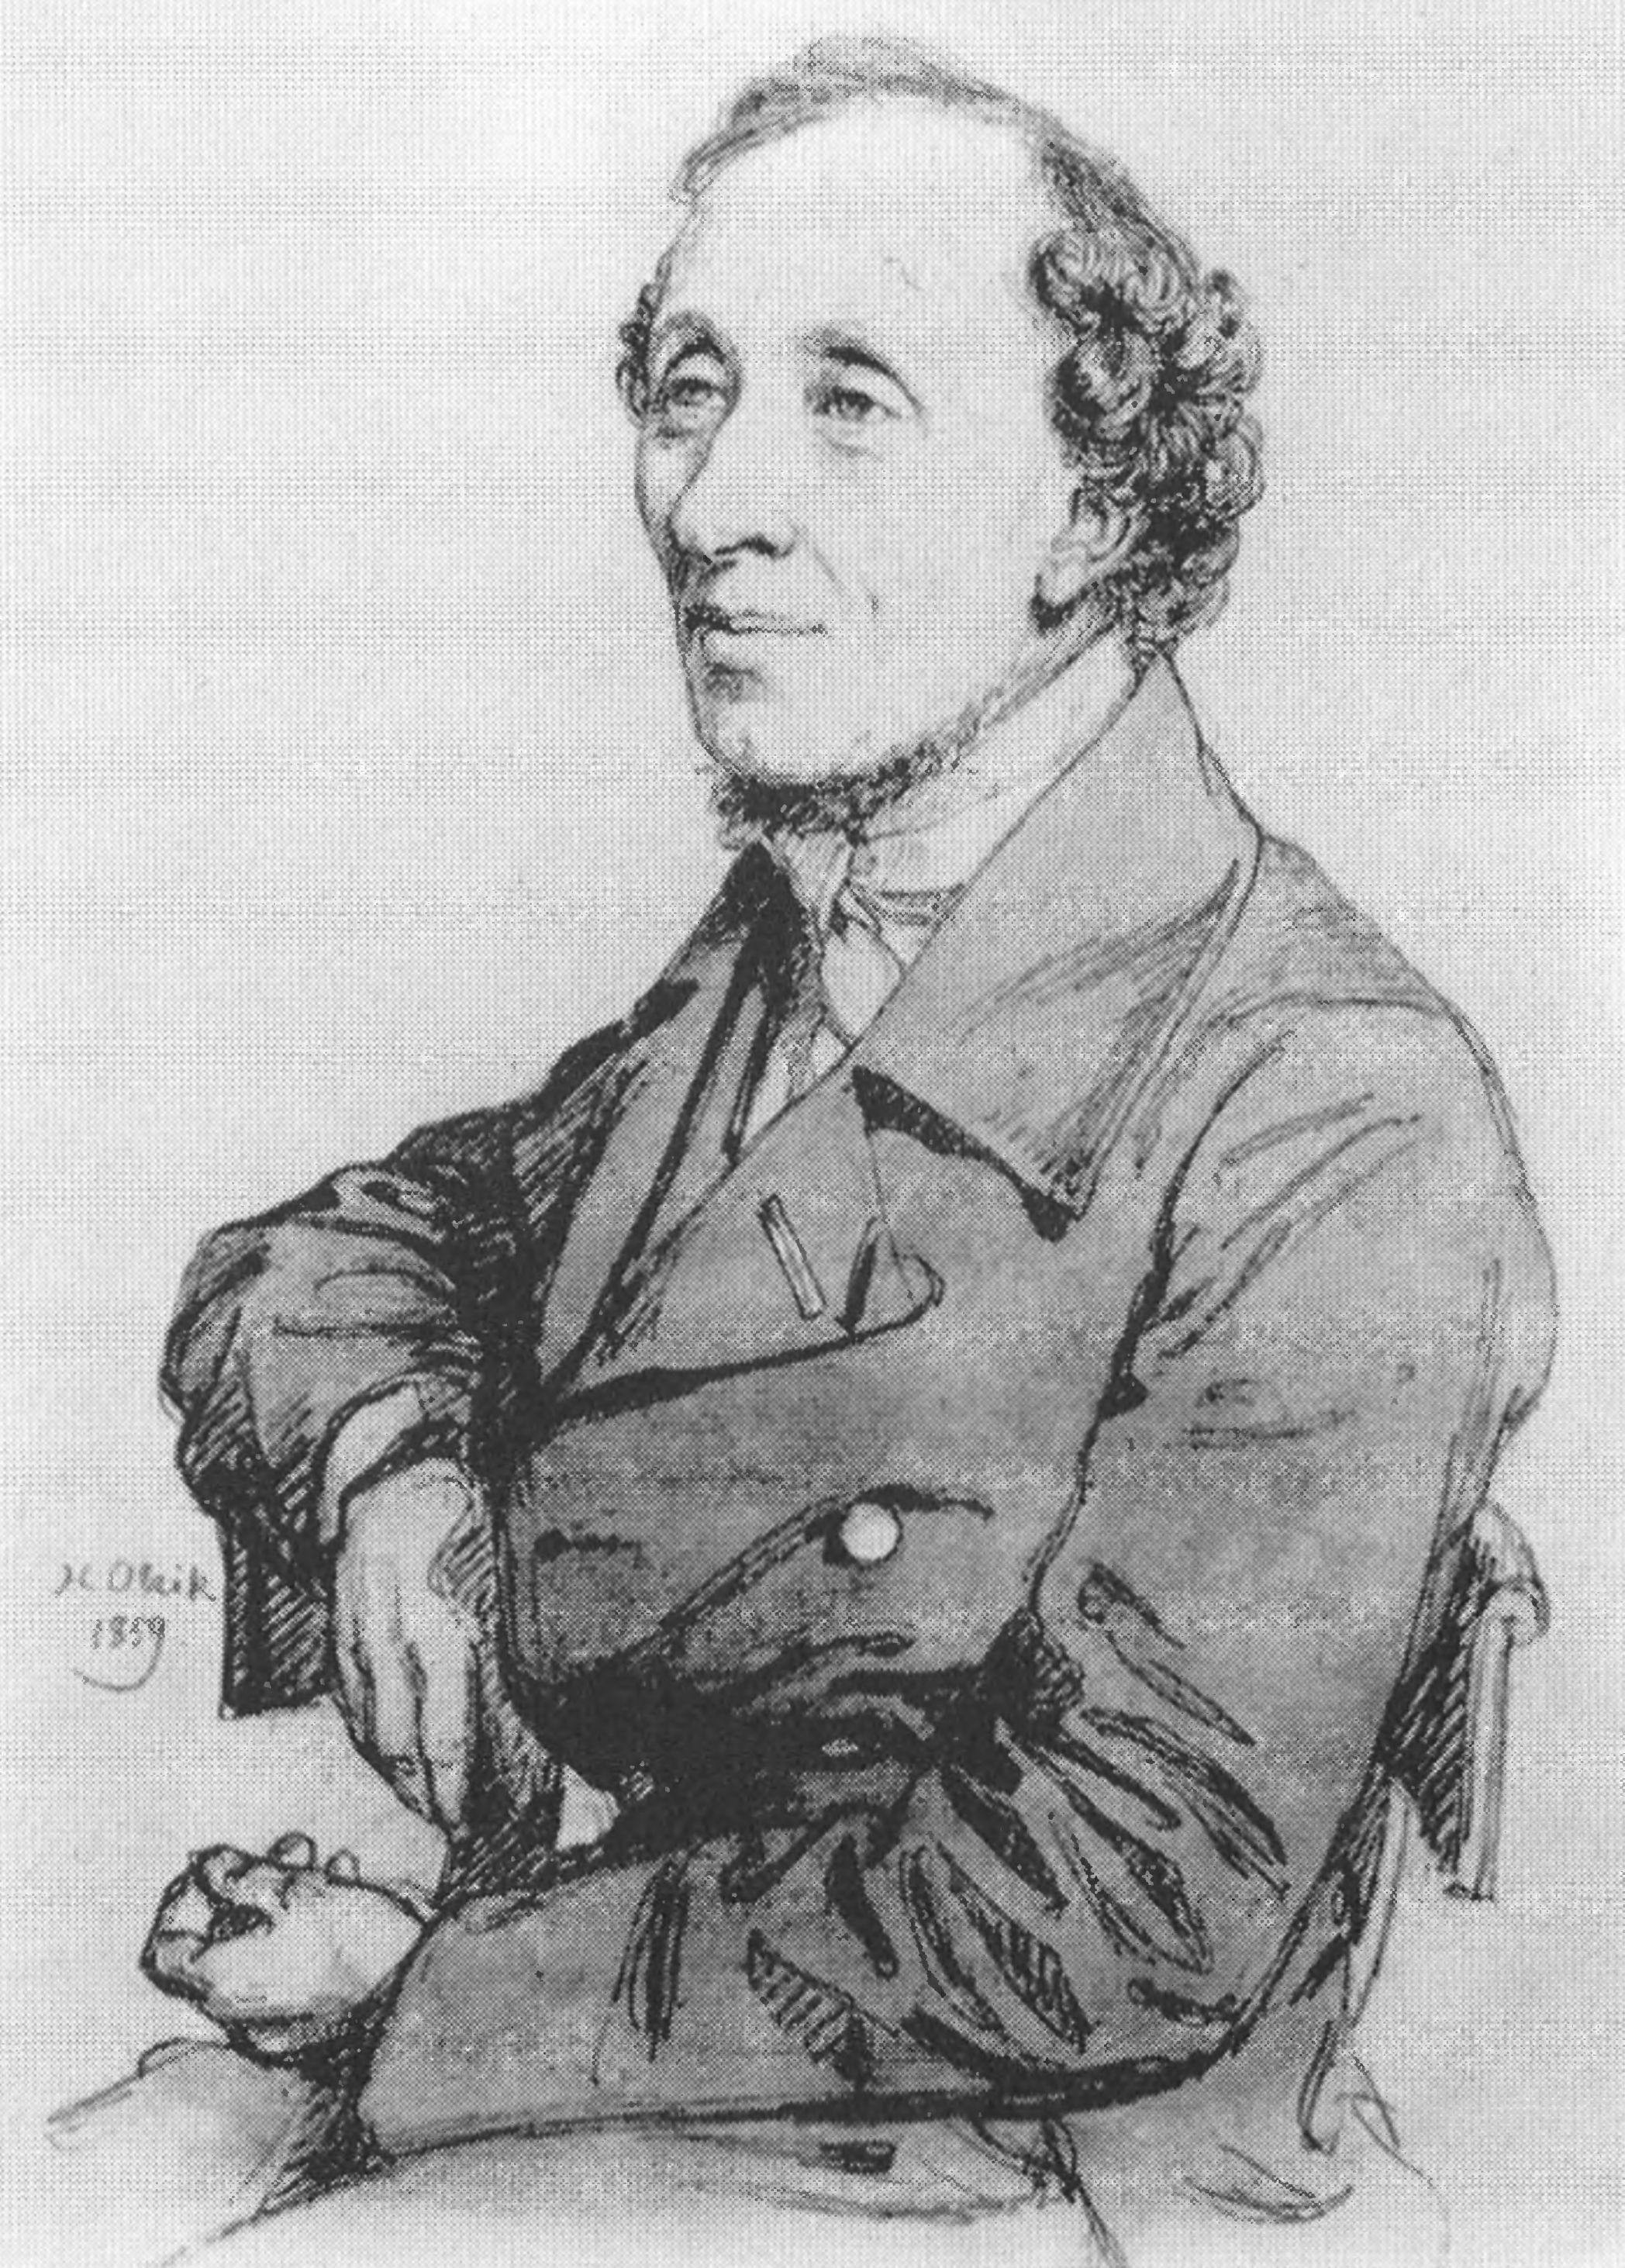 Портрет Андерсена работы художника Х. Ульрика, 1859 г.